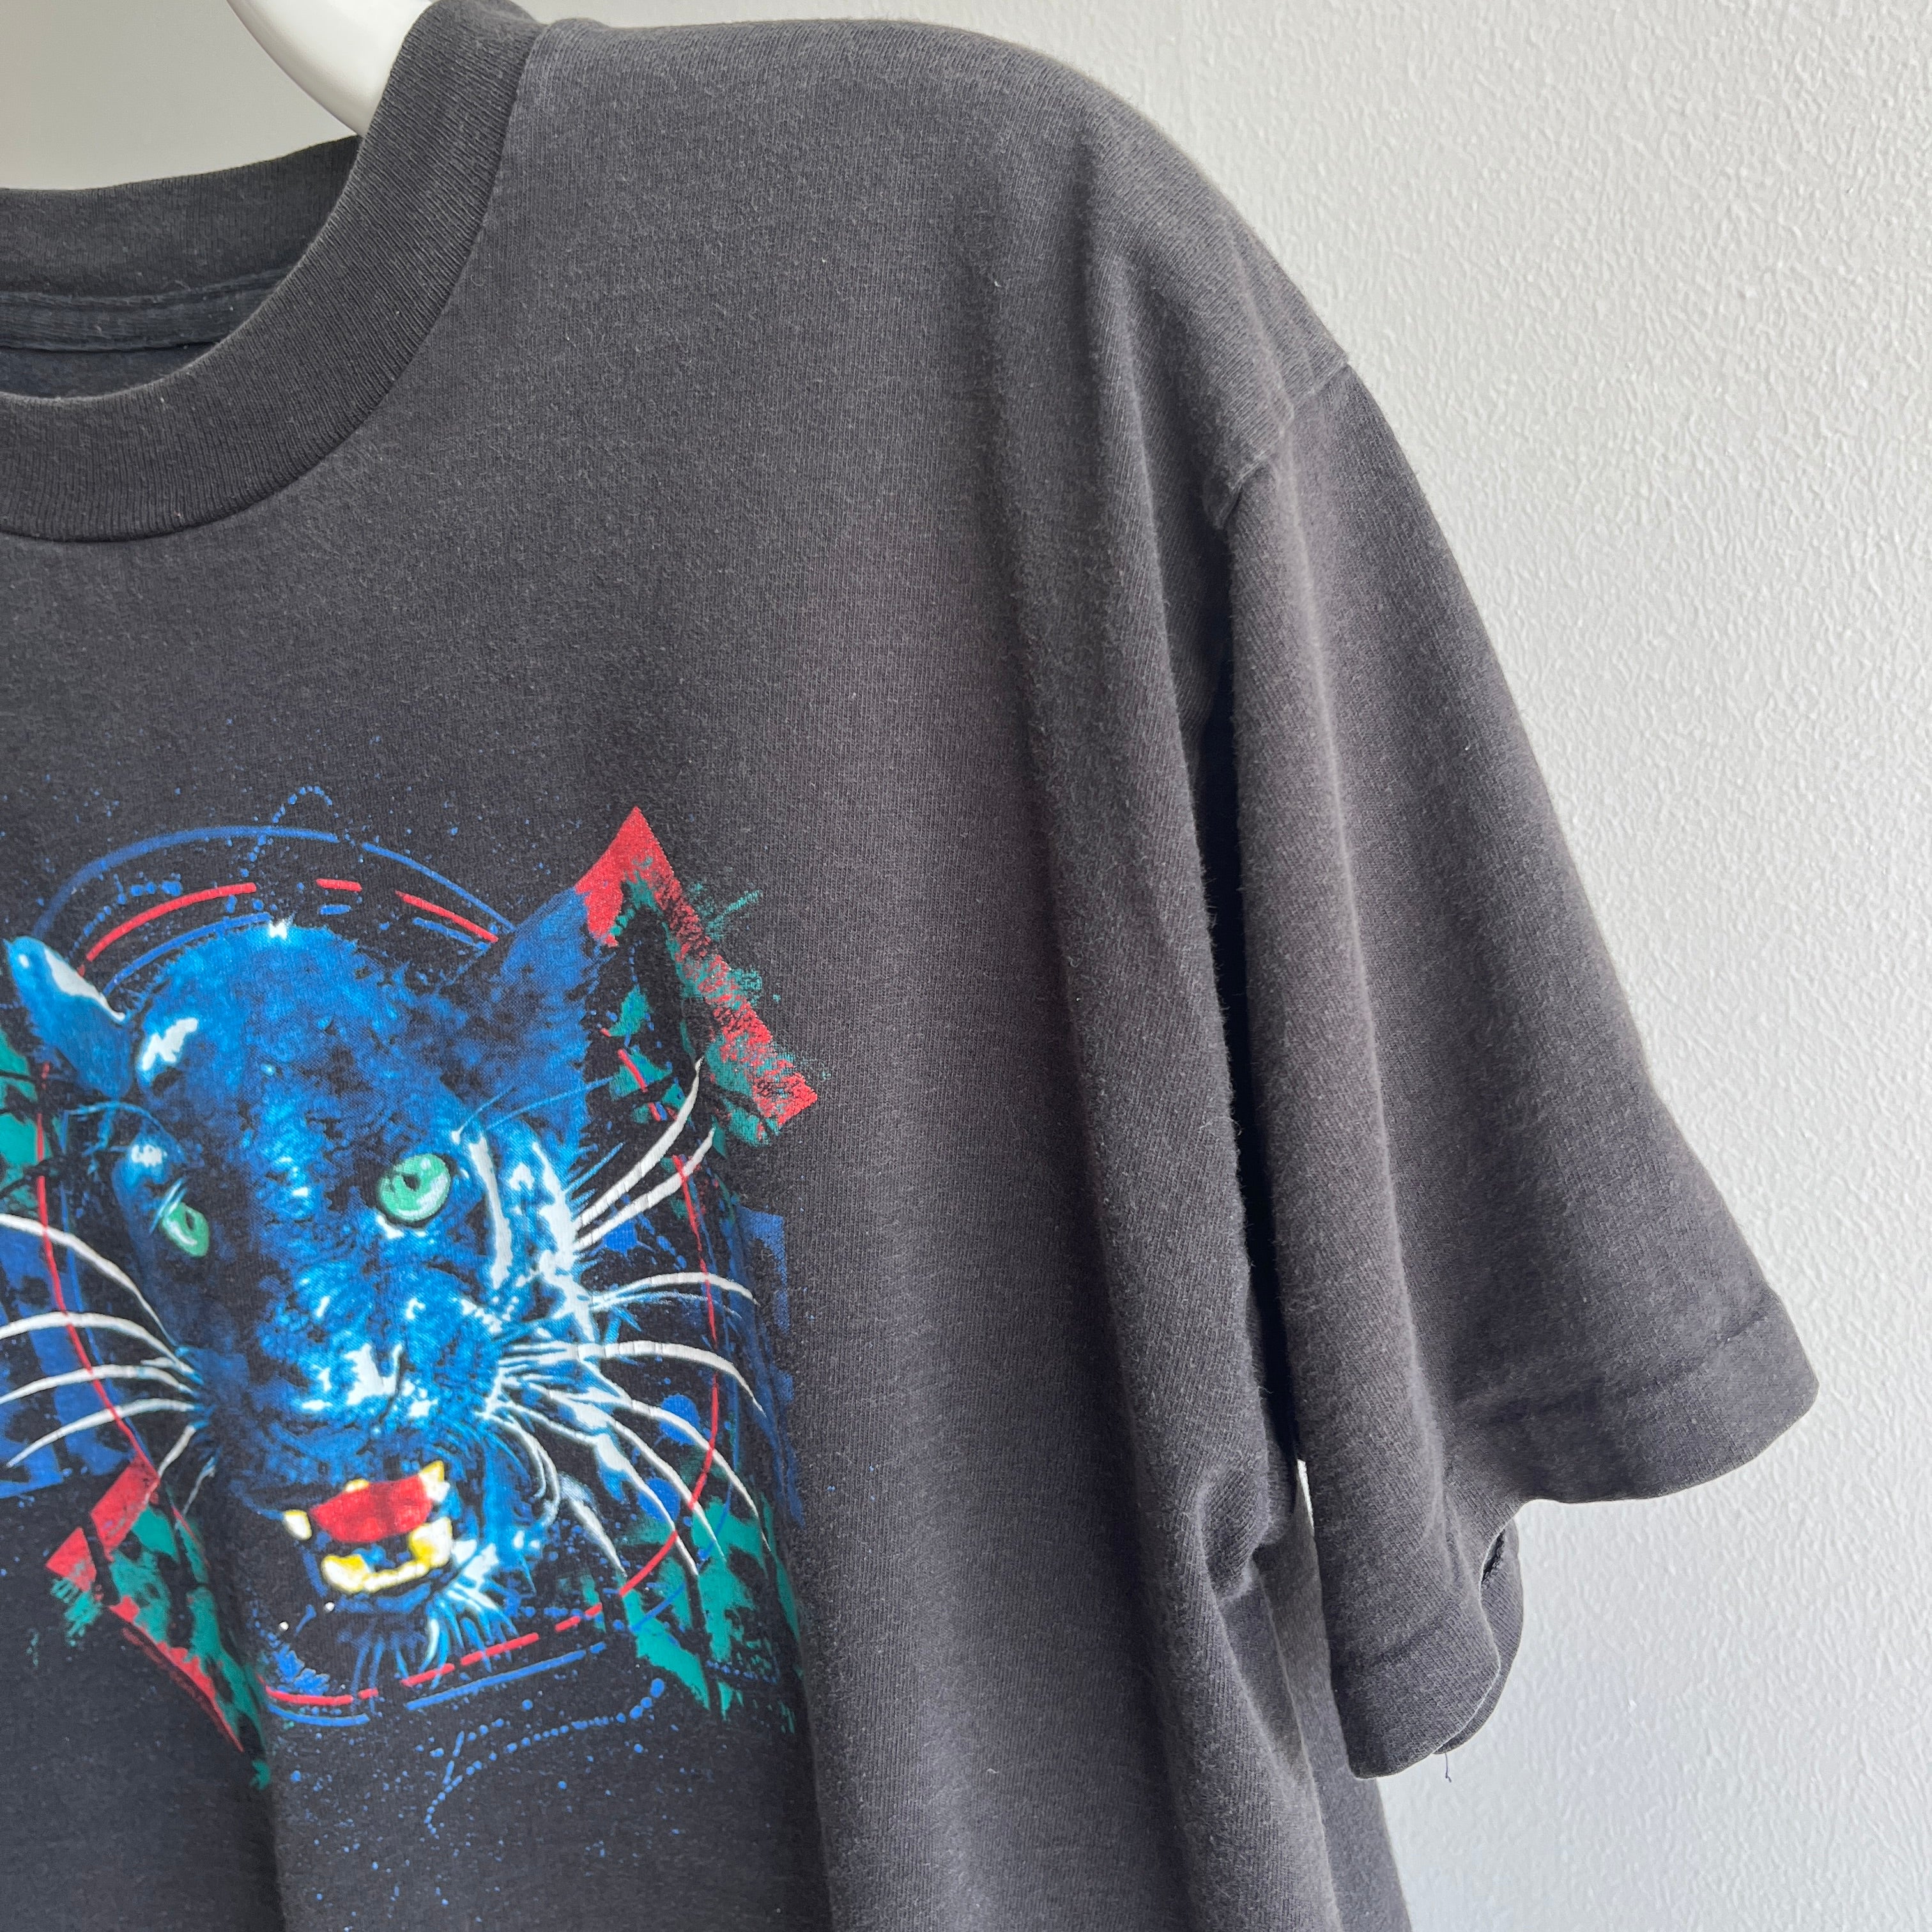 1990s Big Cat T-Shirt